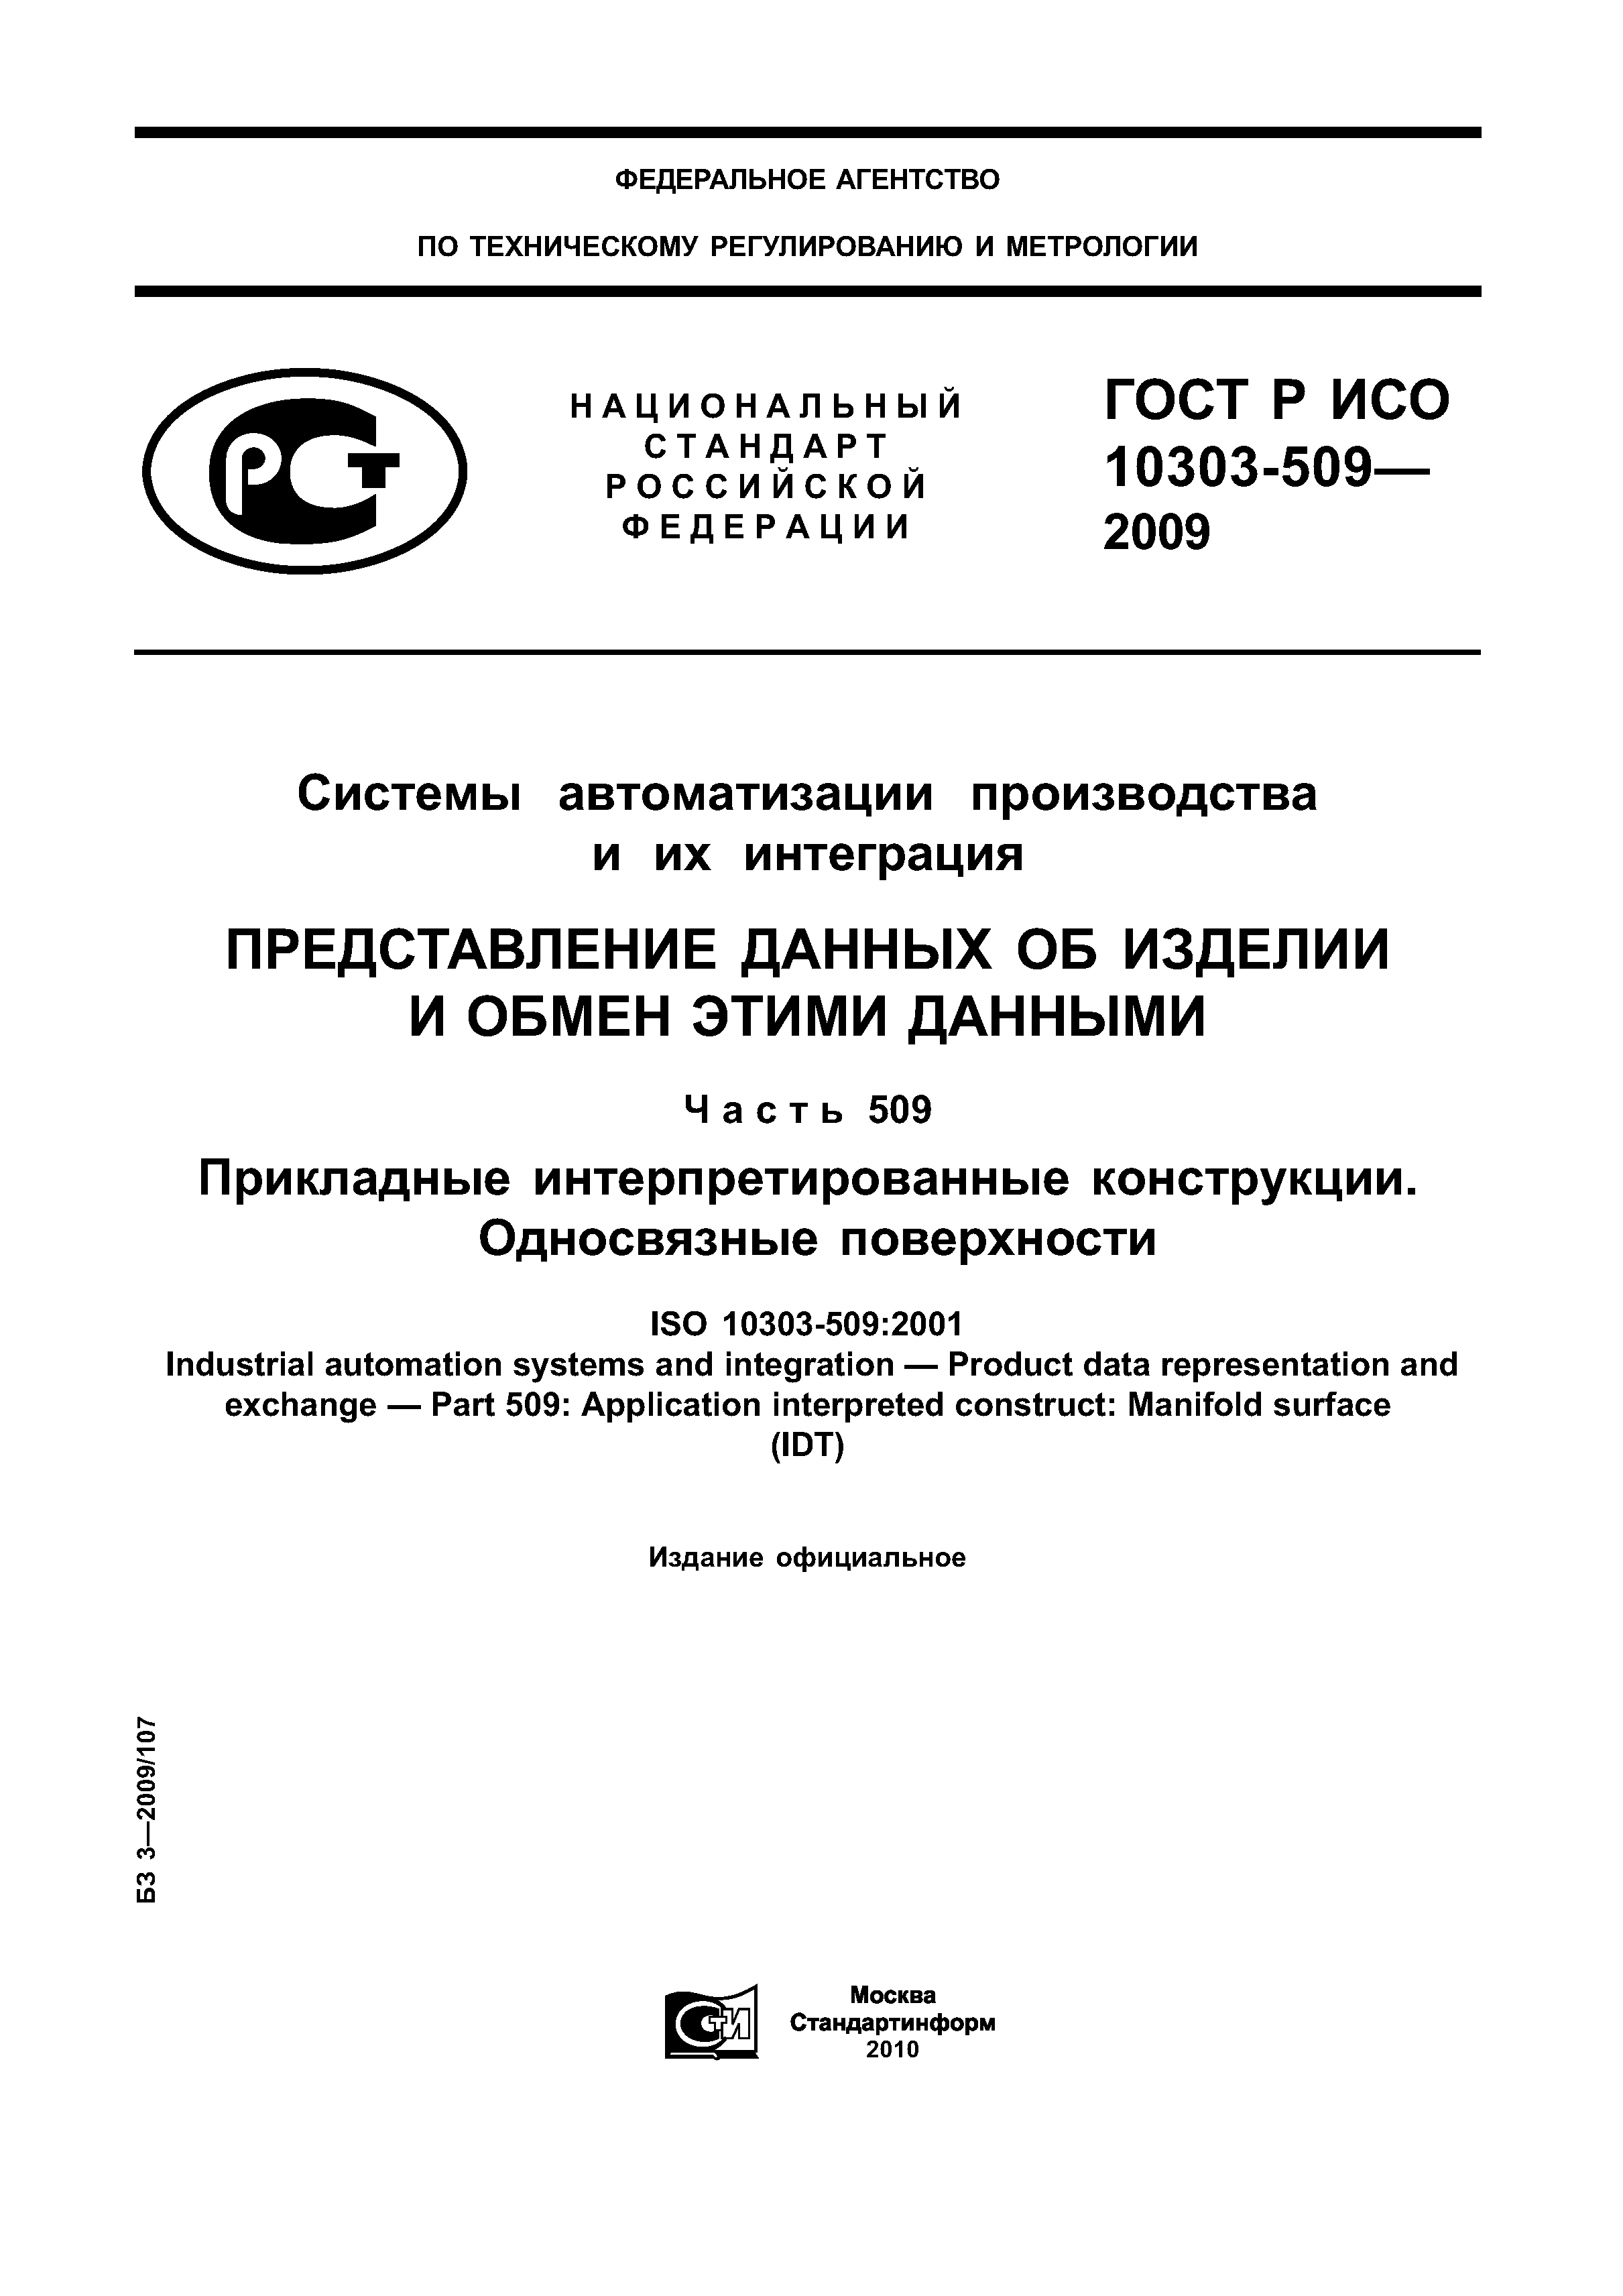 ГОСТ Р ИСО 10303-509-2009